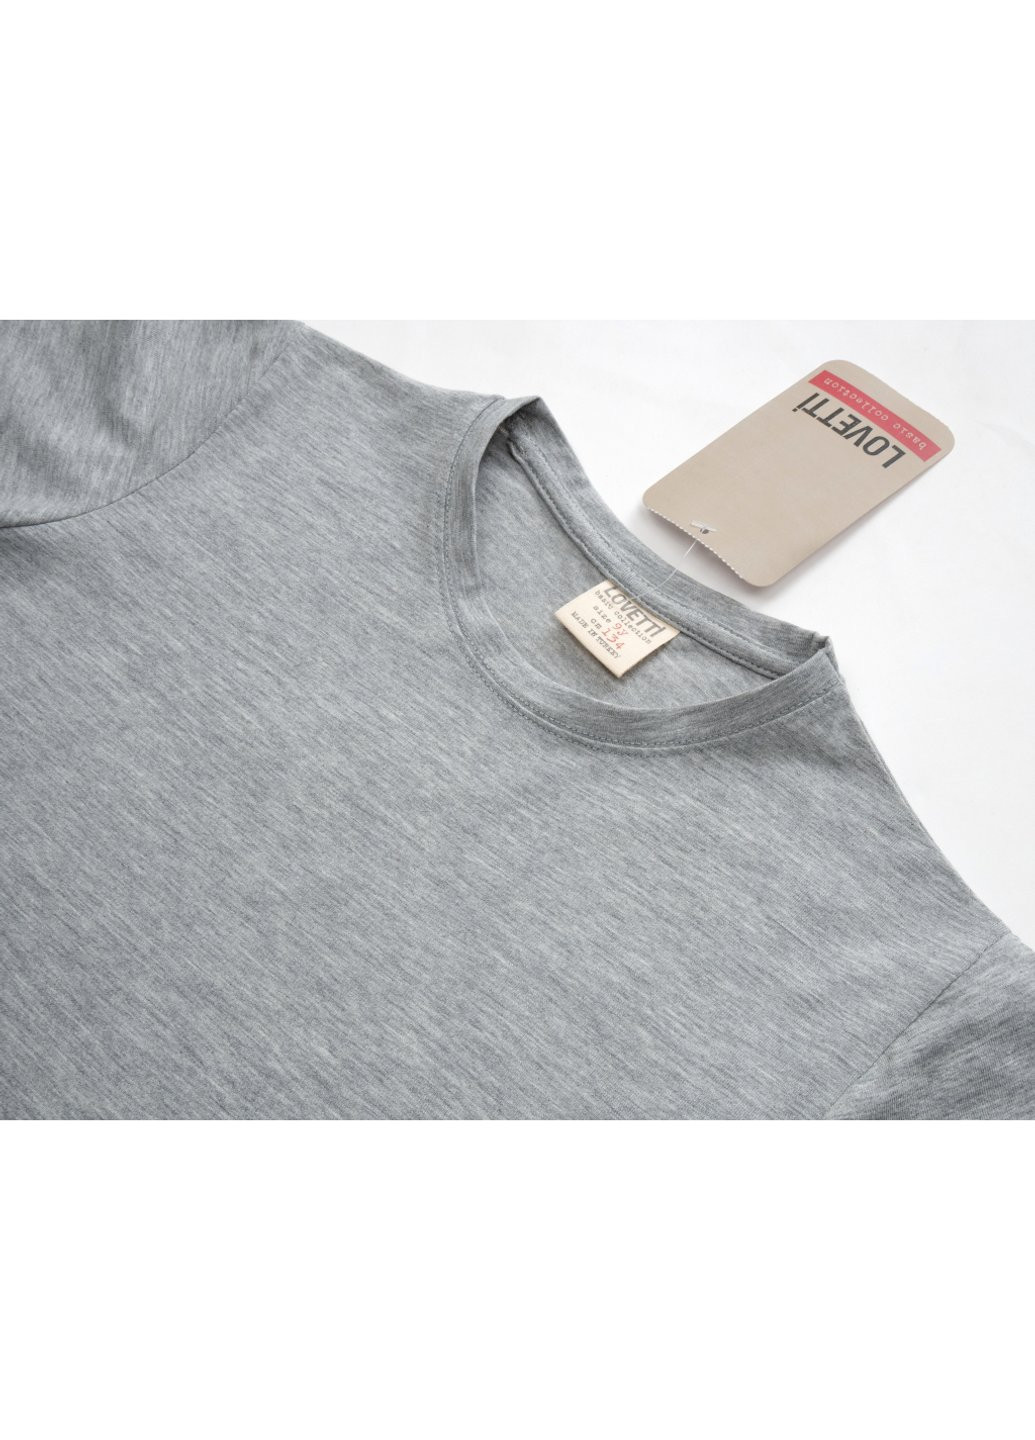 Комбинированная футболка детская базовая (3031-140-gray) Lovetti